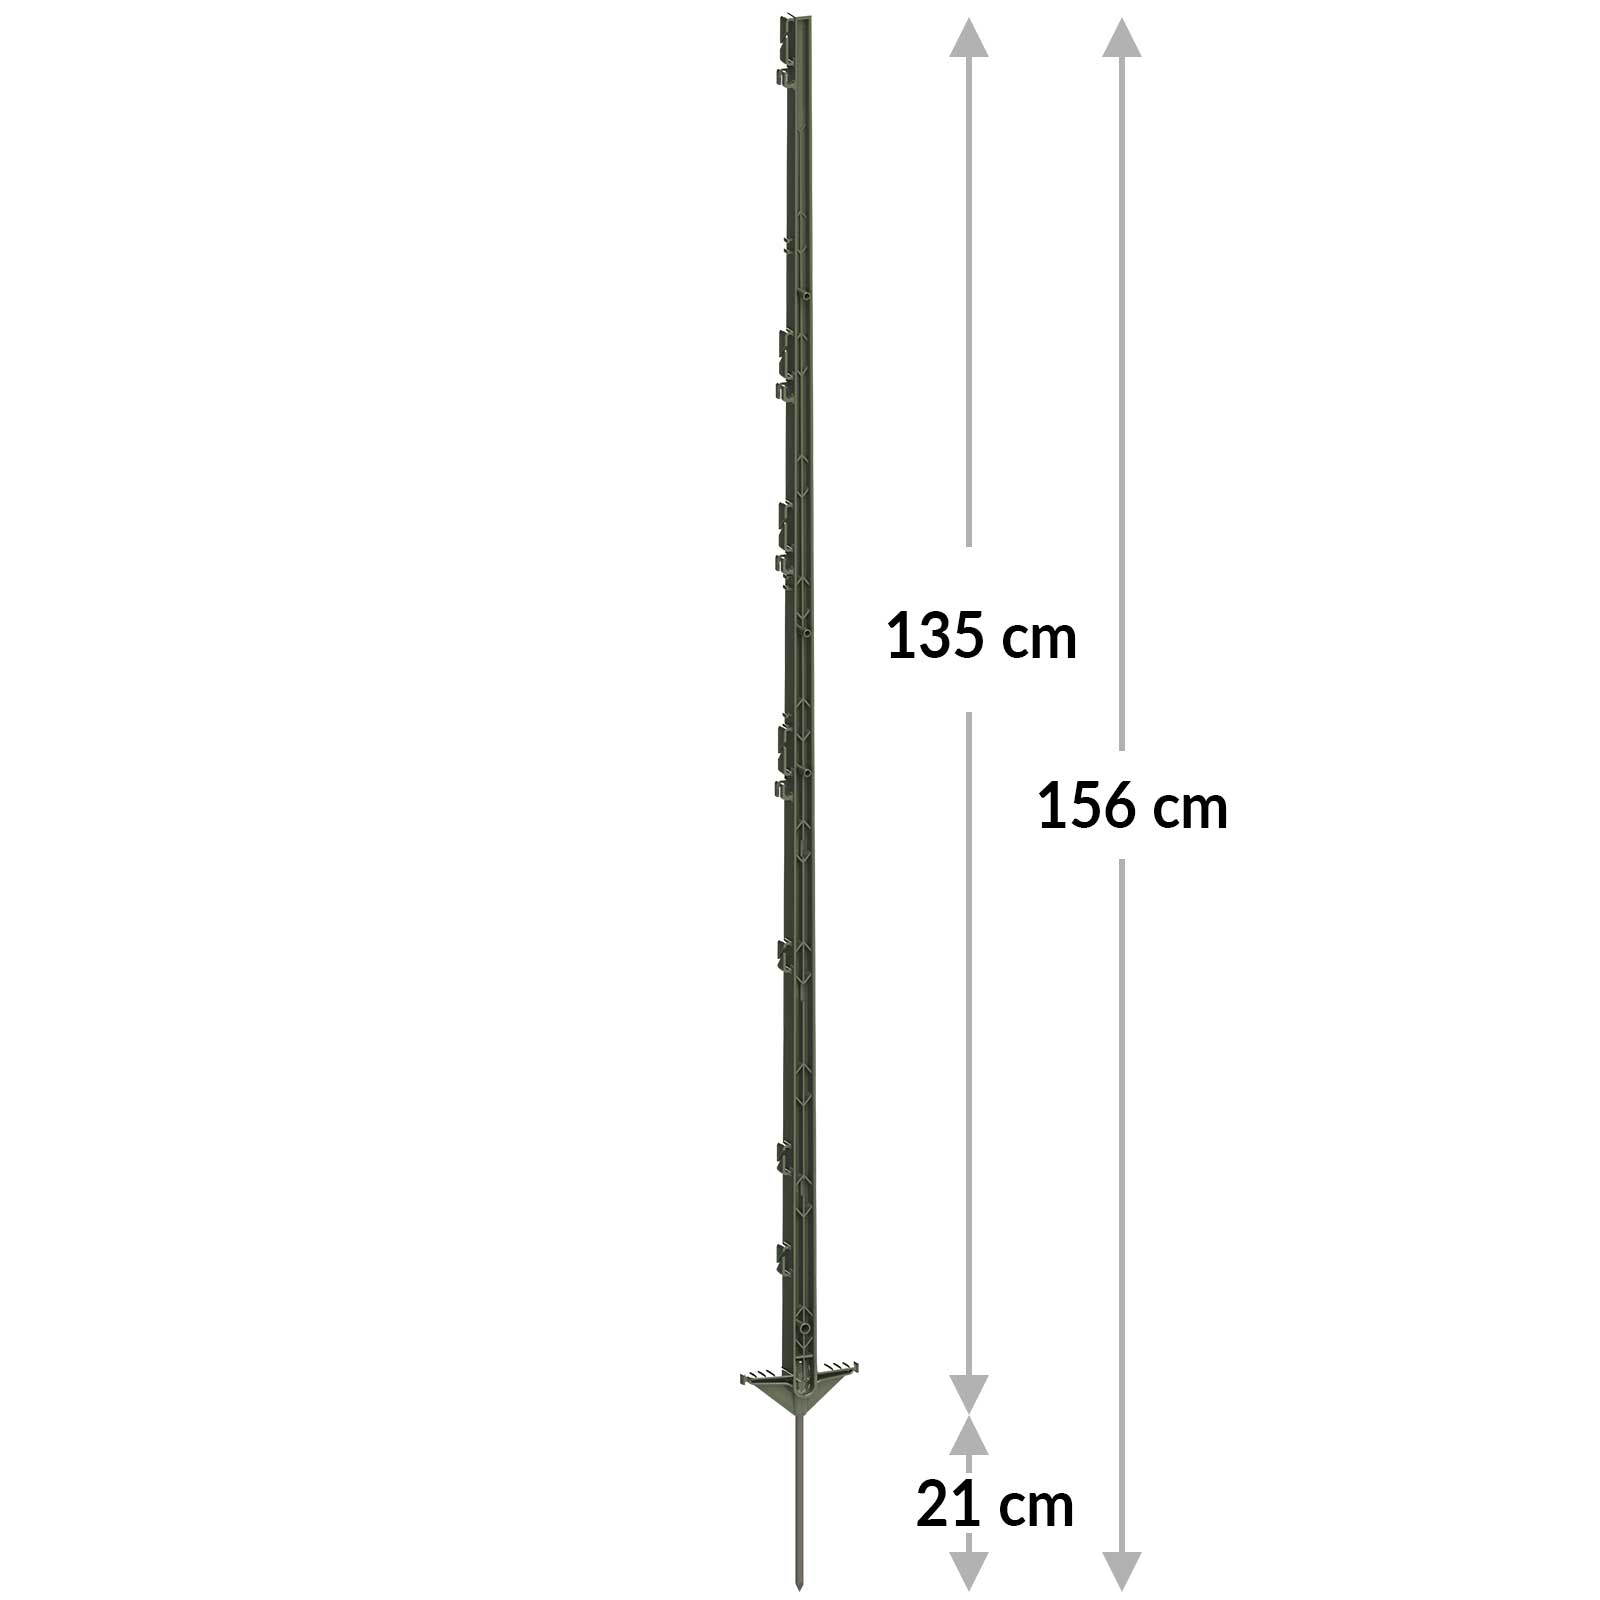 Műanyag villanypásztor karó Expert 156 cm, dupla taposóval, zöld (5 darab)